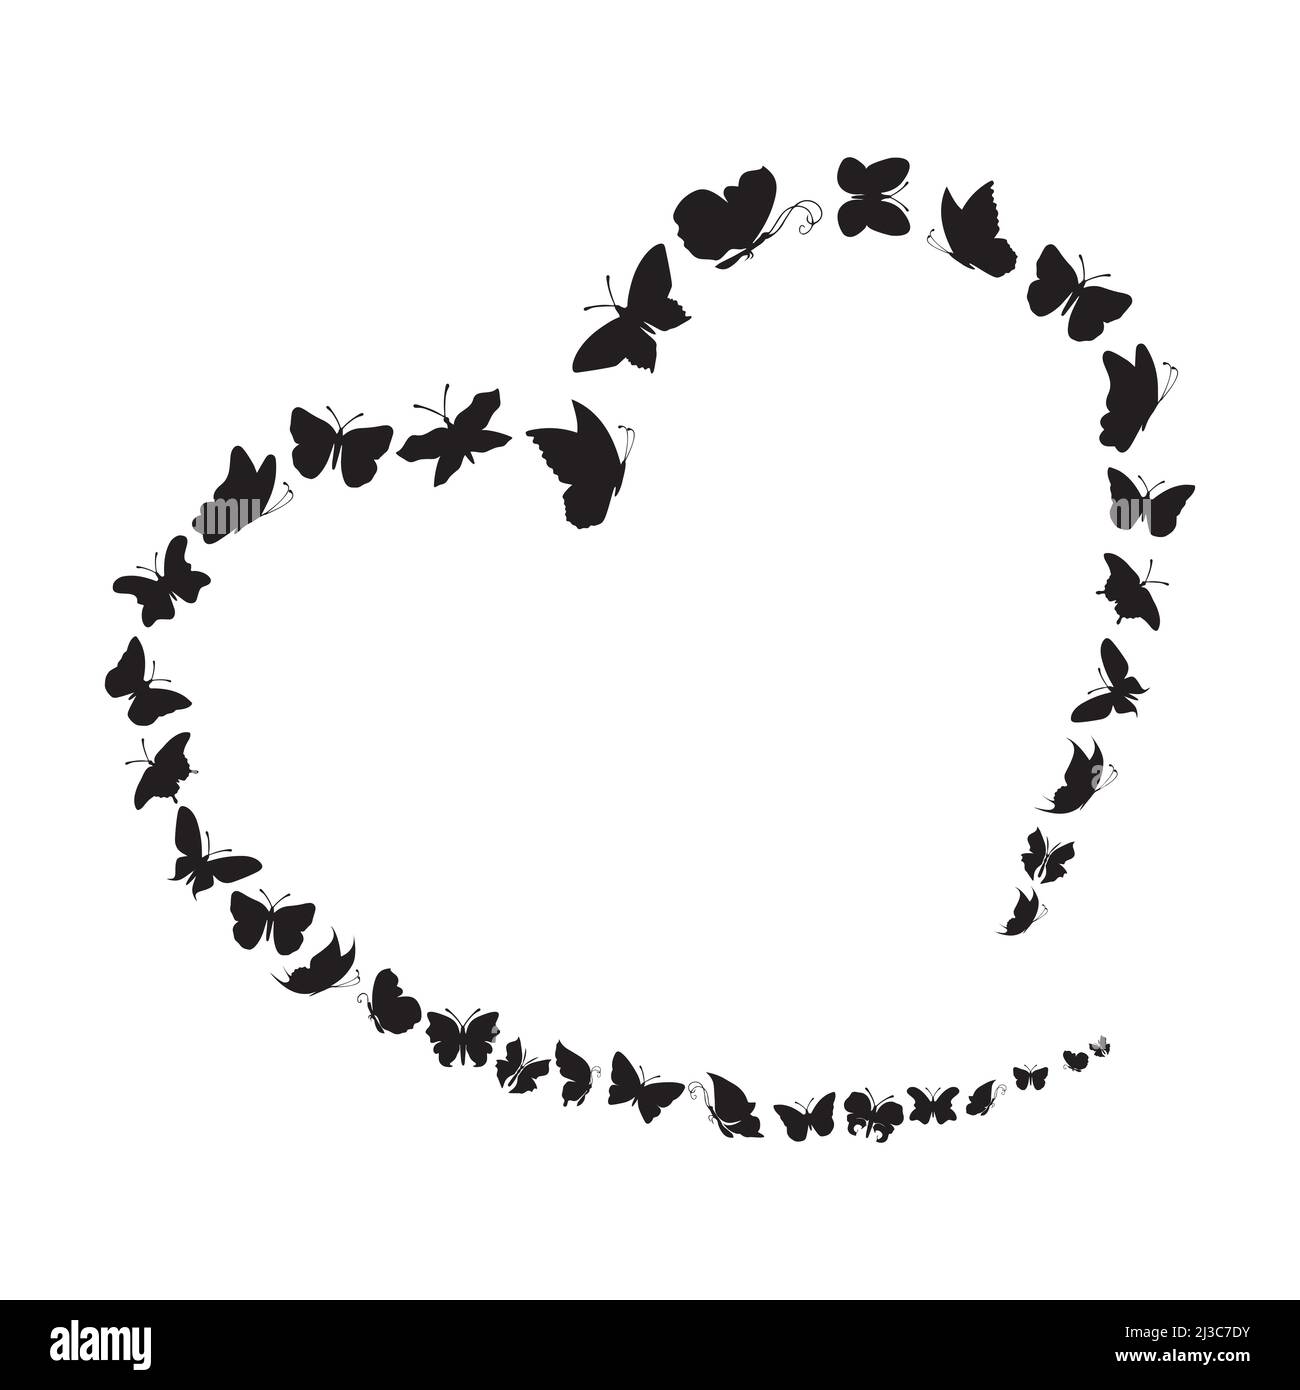 Fliegende Schmetterlinge im herzförmigen Rahmenmuster. Black Sketch Clipart Butterflys auf weißem Hintergrund. Vektorgrafik Stock Vektor